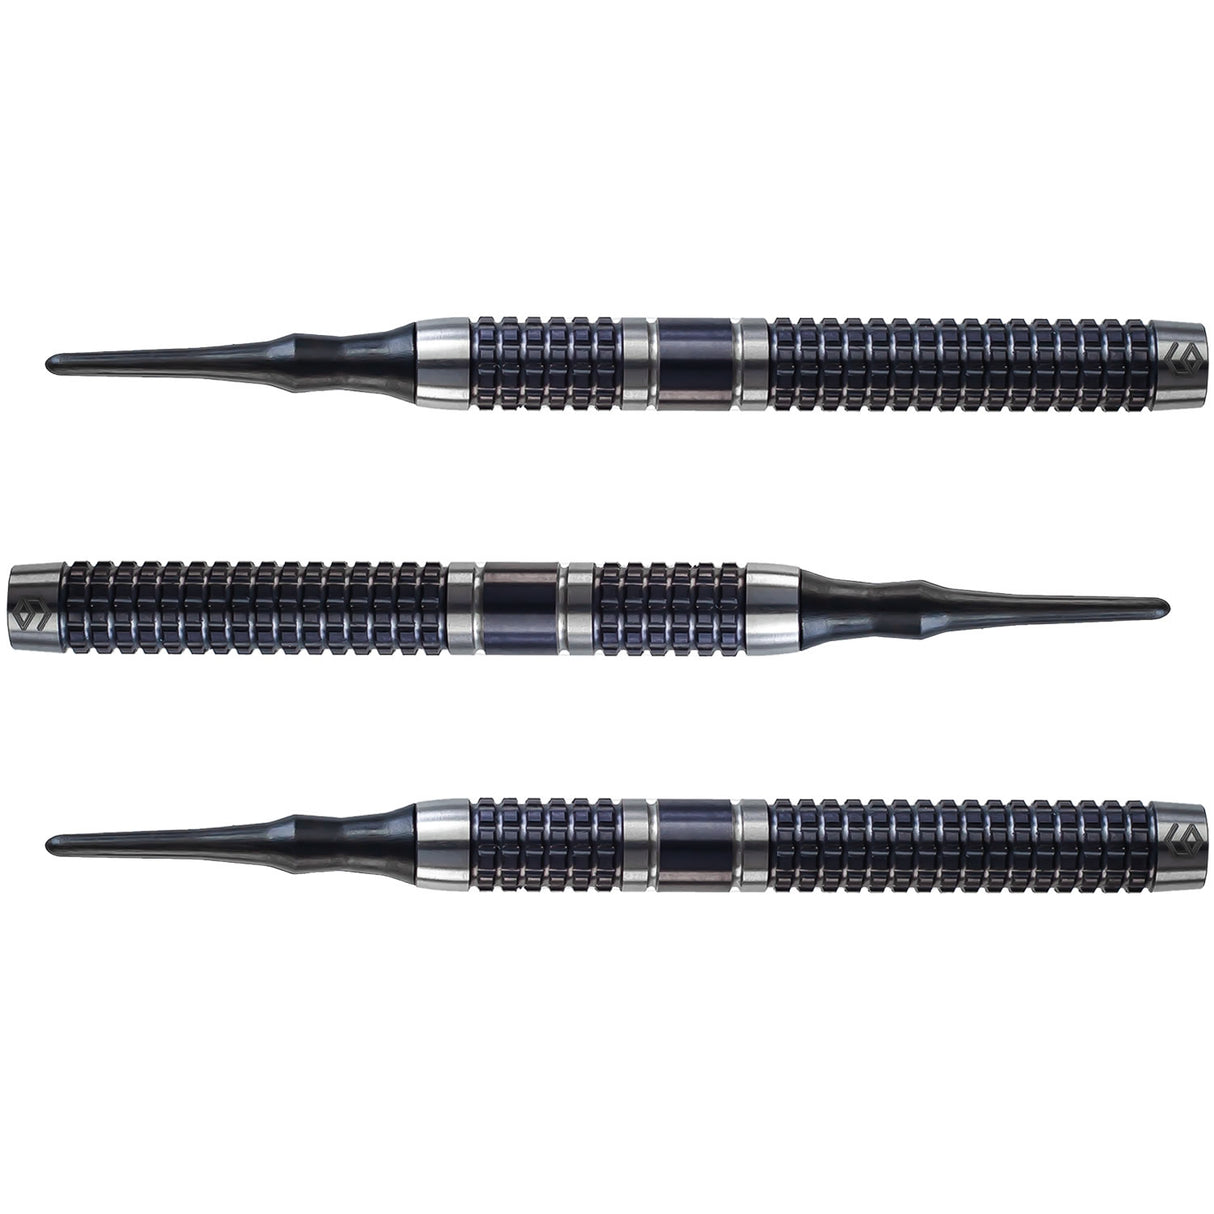 Caliburn Matrix II Darts - Soft Tip - 90% - M1 - Black